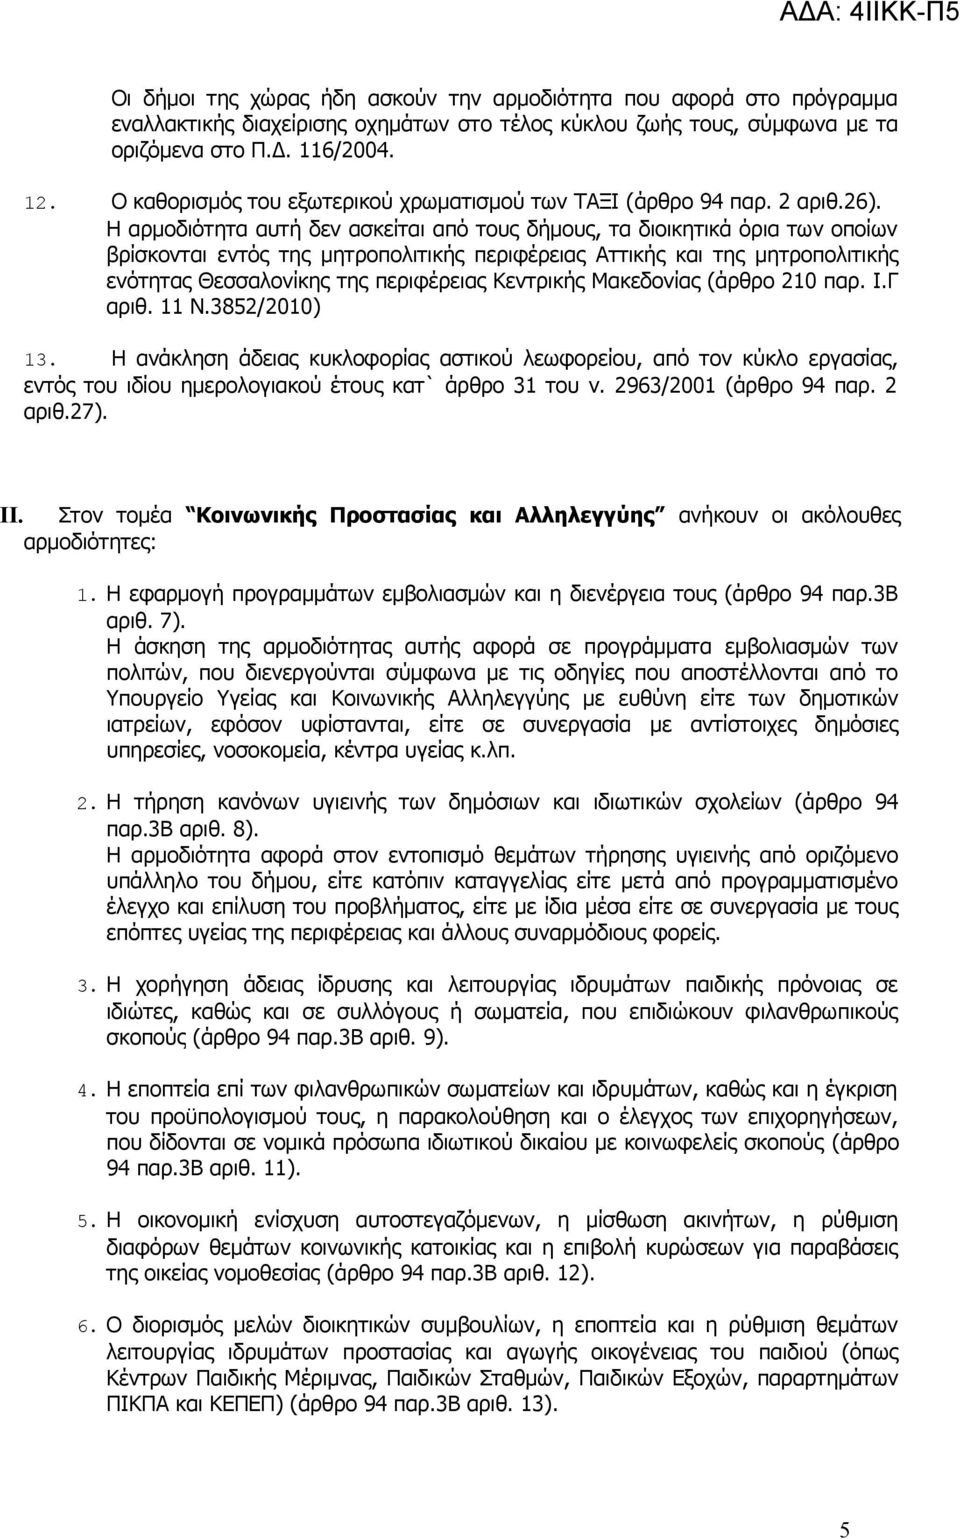 Η αρμοδιότητα αυτή δεν ασκείται από τους δήμους, τα διοικητικά όρια των οποίων βρίσκονται εντός της μητροπολιτικής περιφέρειας Αττικής και της μητροπολιτικής ενότητας Θεσσαλονίκης της περιφέρειας